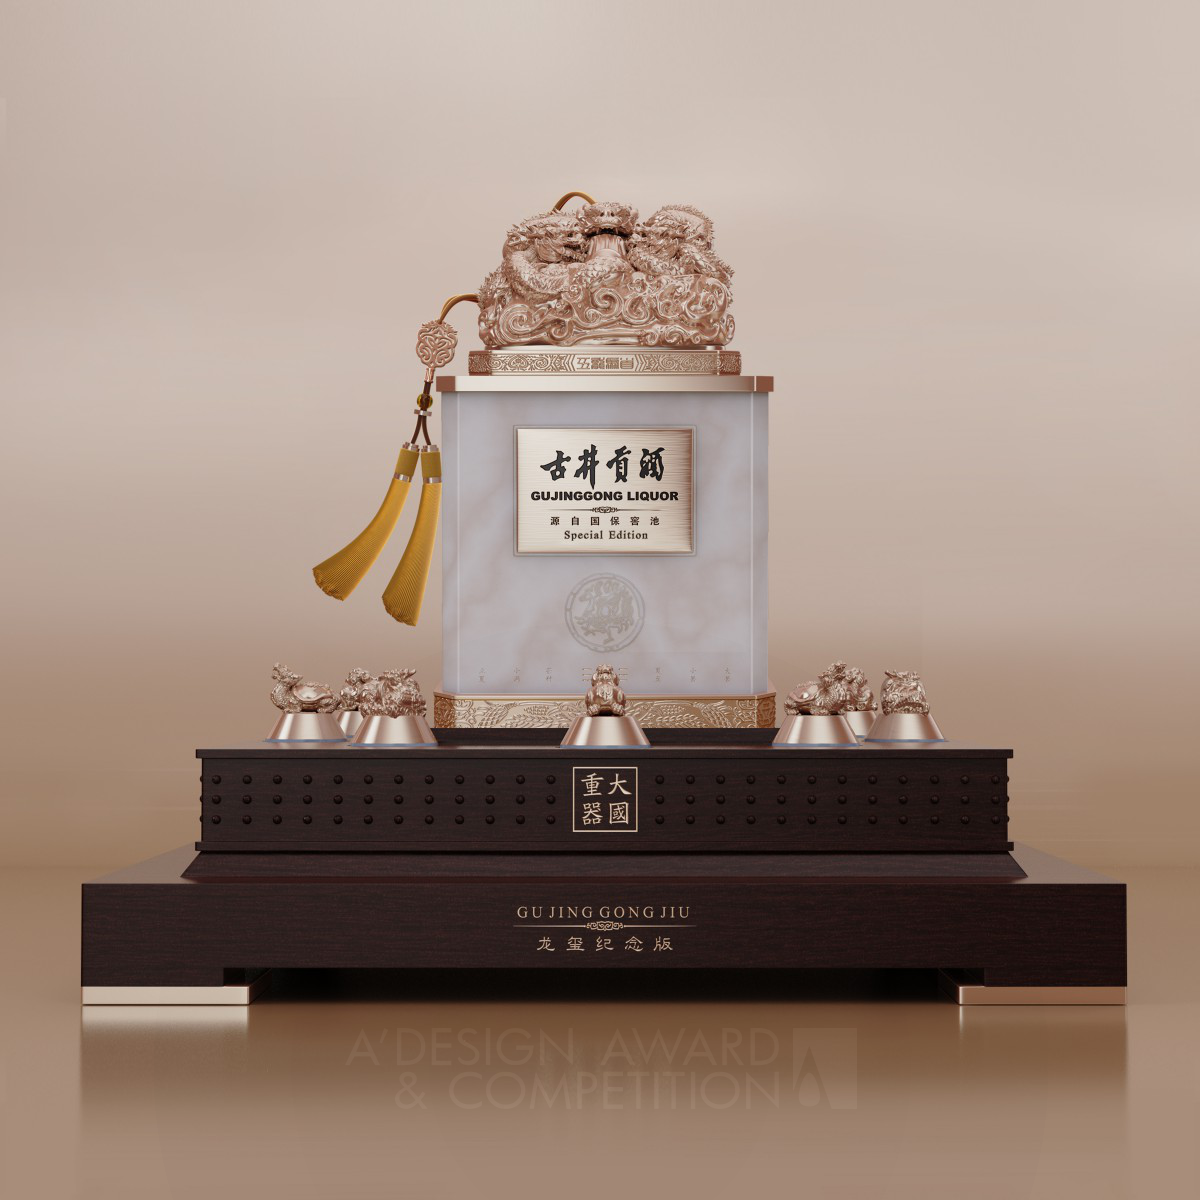 Gujin-National Treasure Chinese Baijiu Packaging by Hua Yun